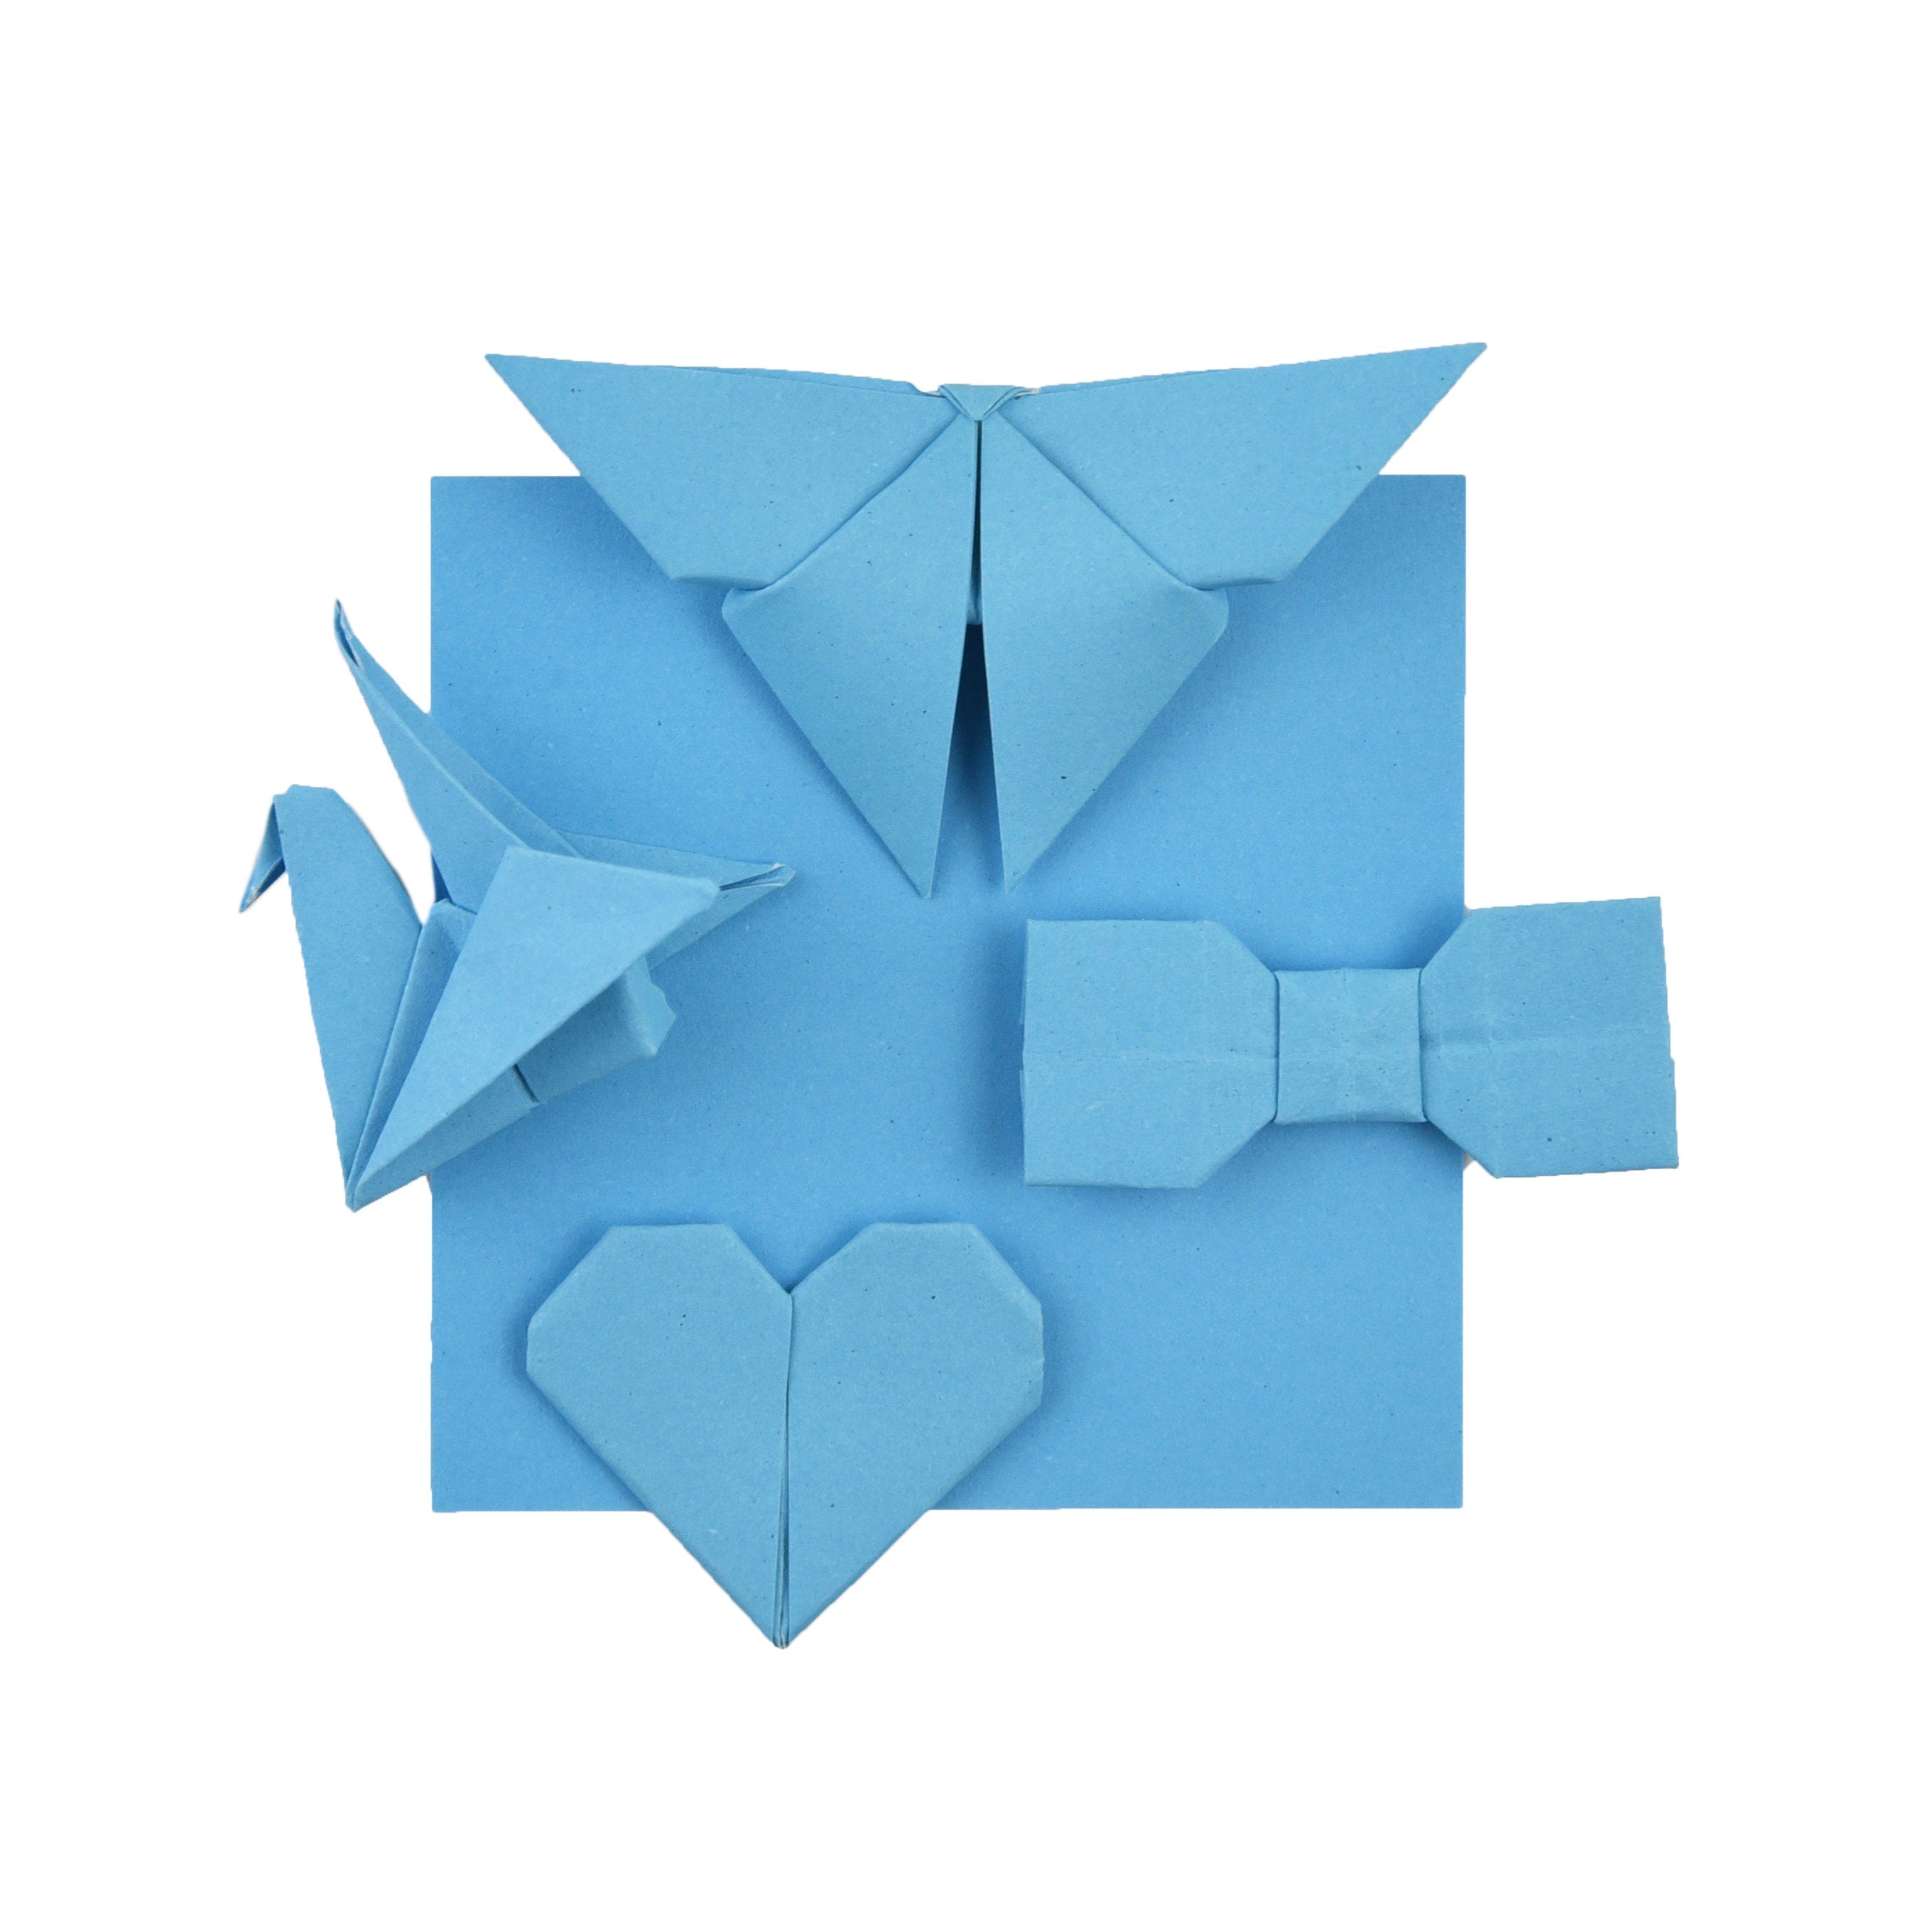 100 fogli di carta origami - 6x6 pollici - Confezione di carta quadrata per piegare, gru origami e decorazioni - S17